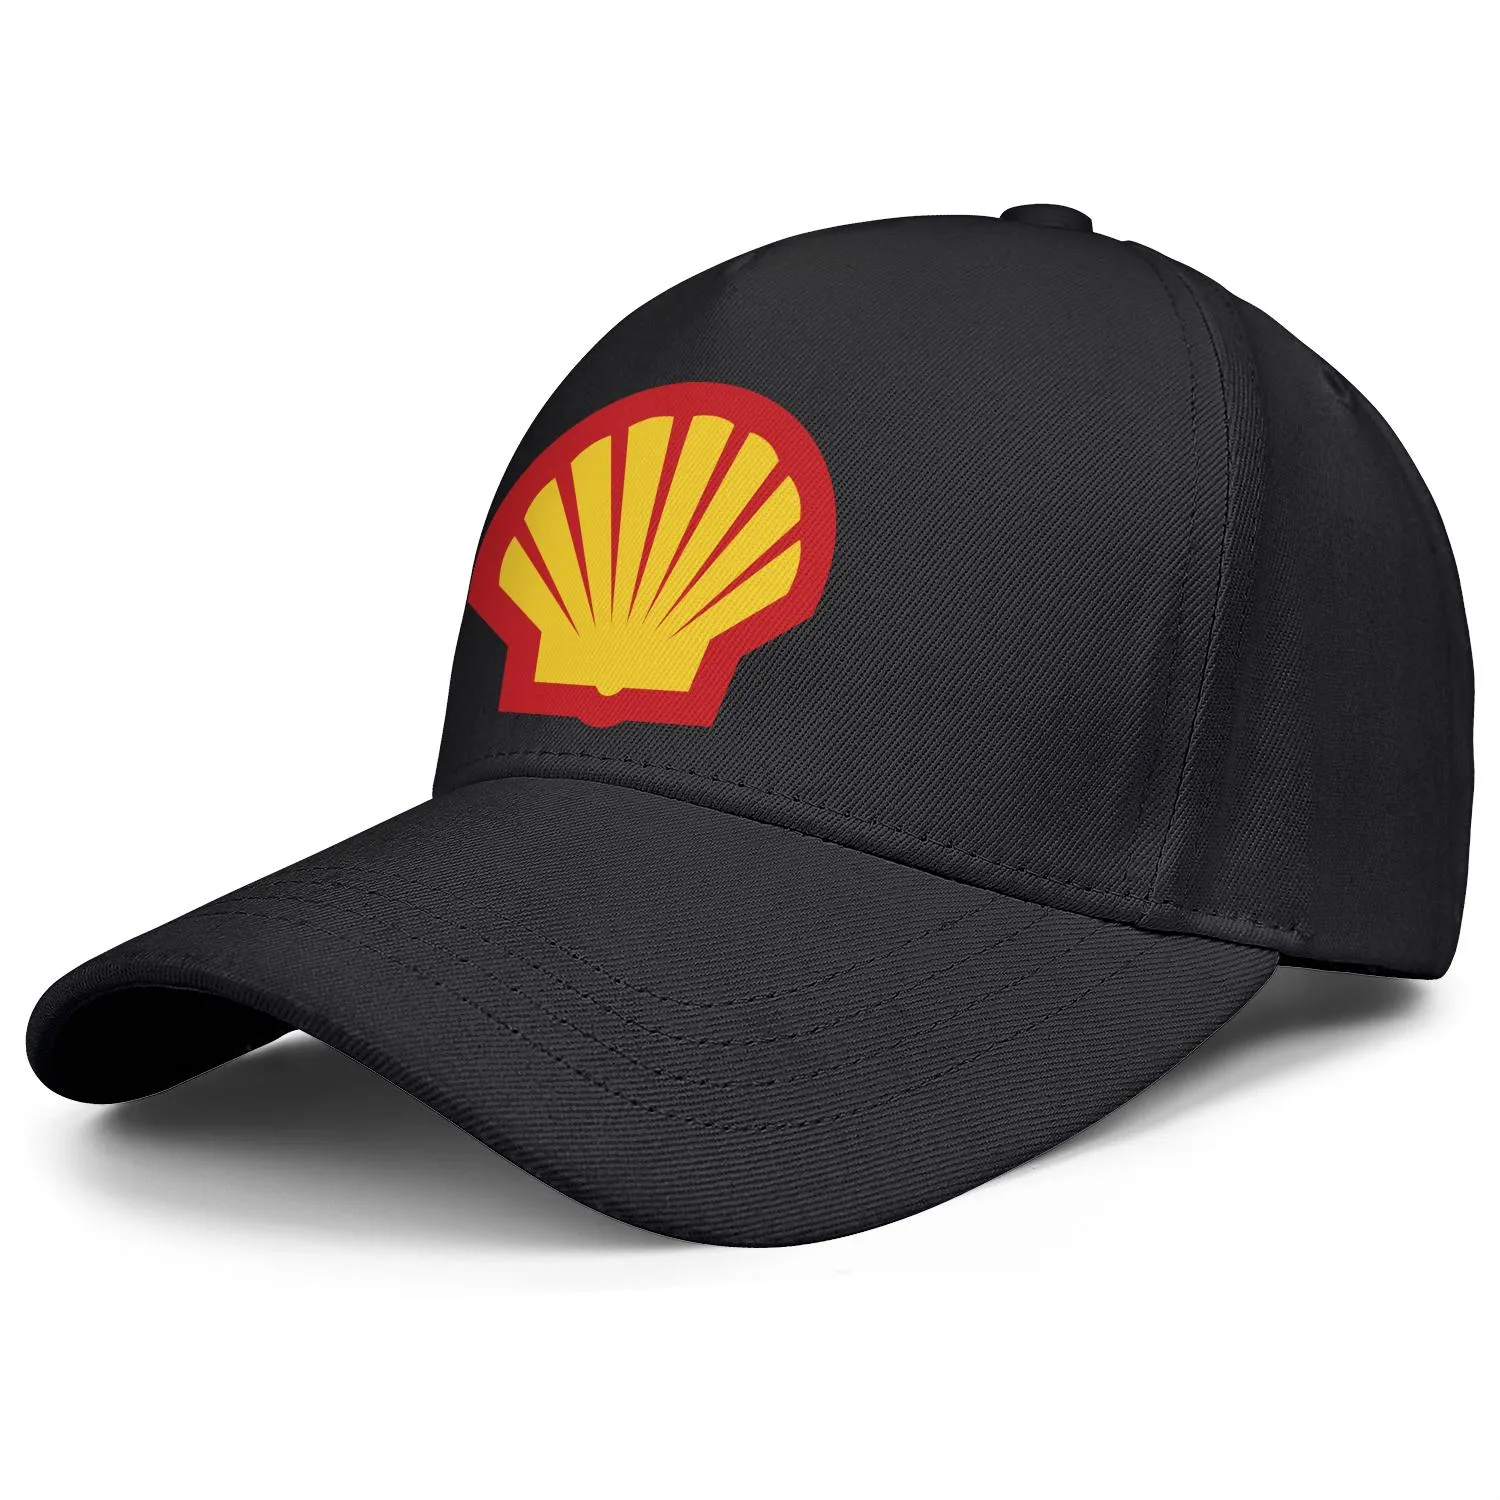 Shell Benzin -Tankstelle Logo Herren und Frauen verstellbare Trucker -Kappe ausgestattet Vintage niedliche Baseballhats Locator Benzin Symbo6473172